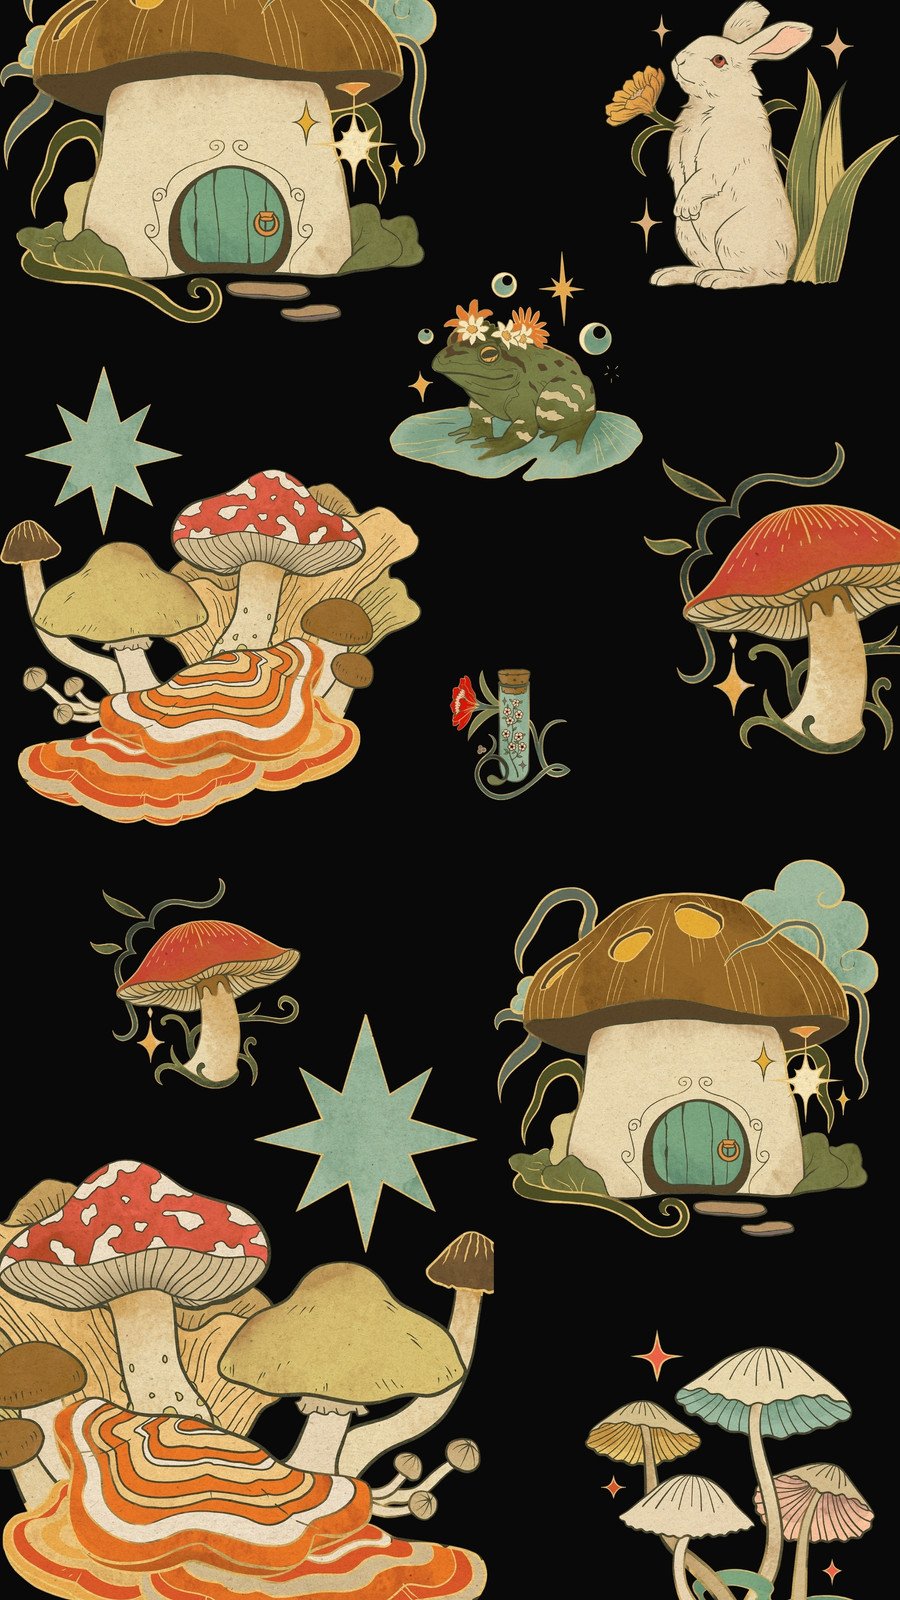 Download wallpaper 800x1280 frog mushroom toadstool sit closeup  samsung galaxy note gtn7000 meizu mx2 hd background